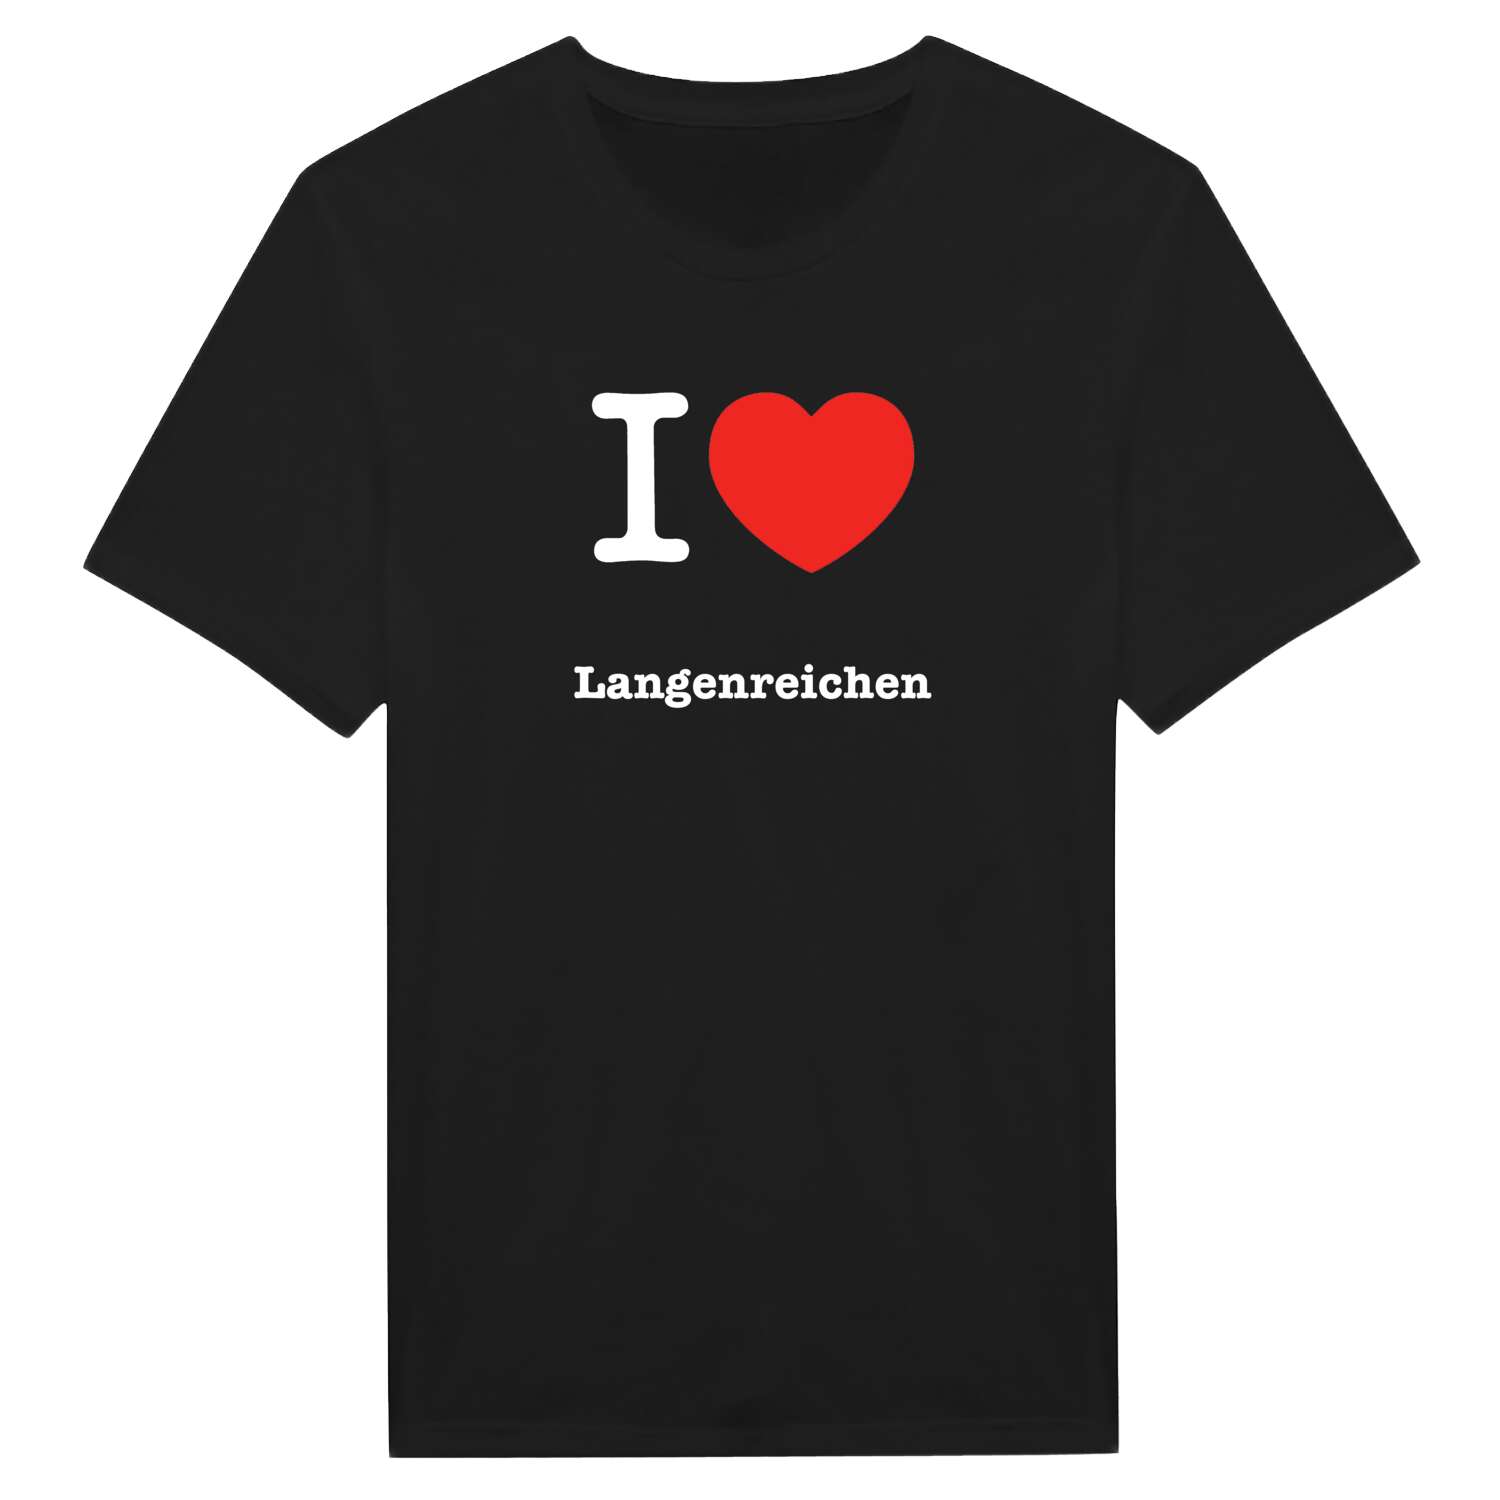 Langenreichen T-Shirt »I love«